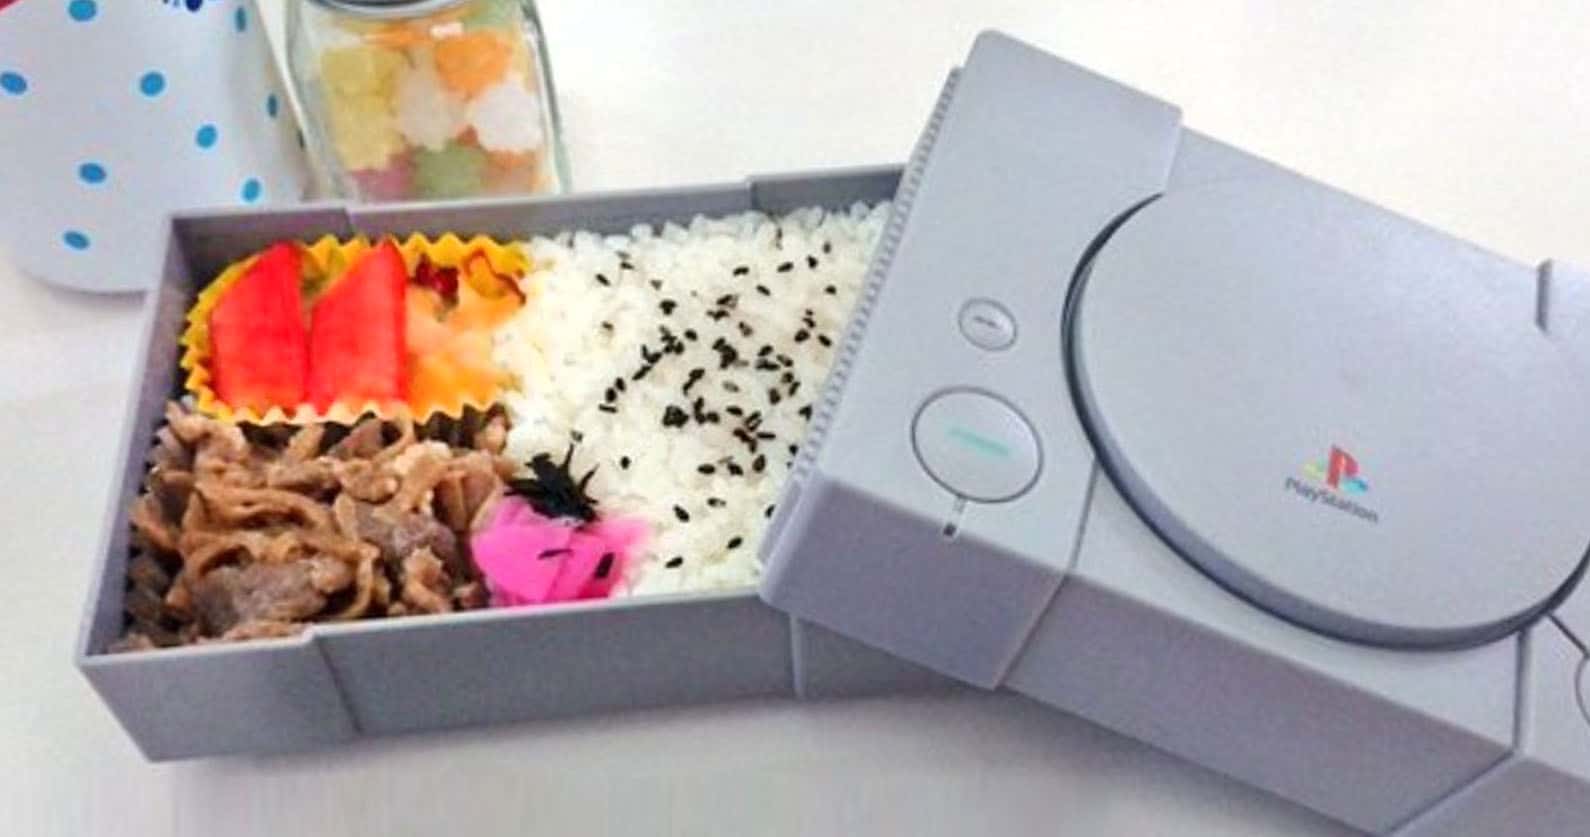 PlayStation Bento Box